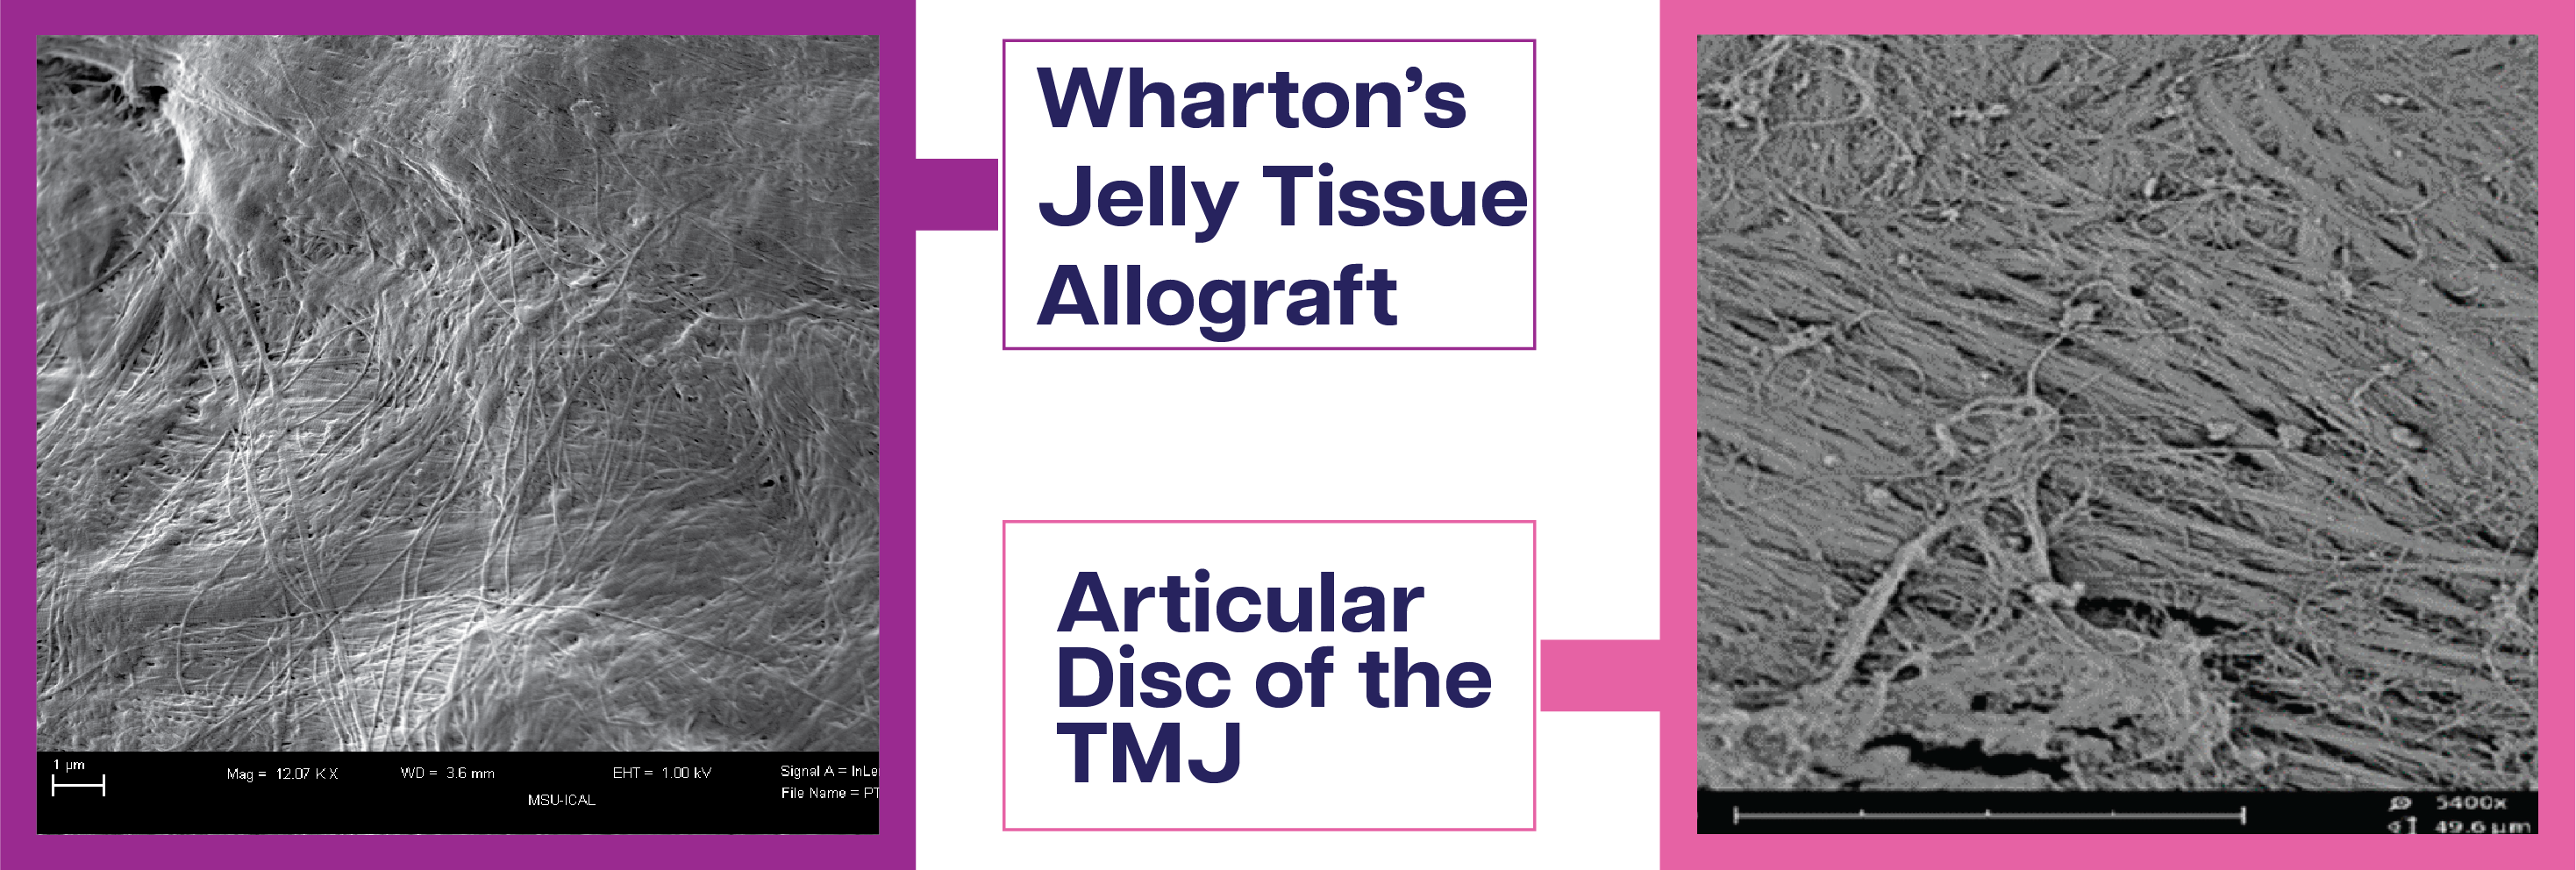 Wharton's Jelly Tissue Allograft - Articular Disc of the TMJ